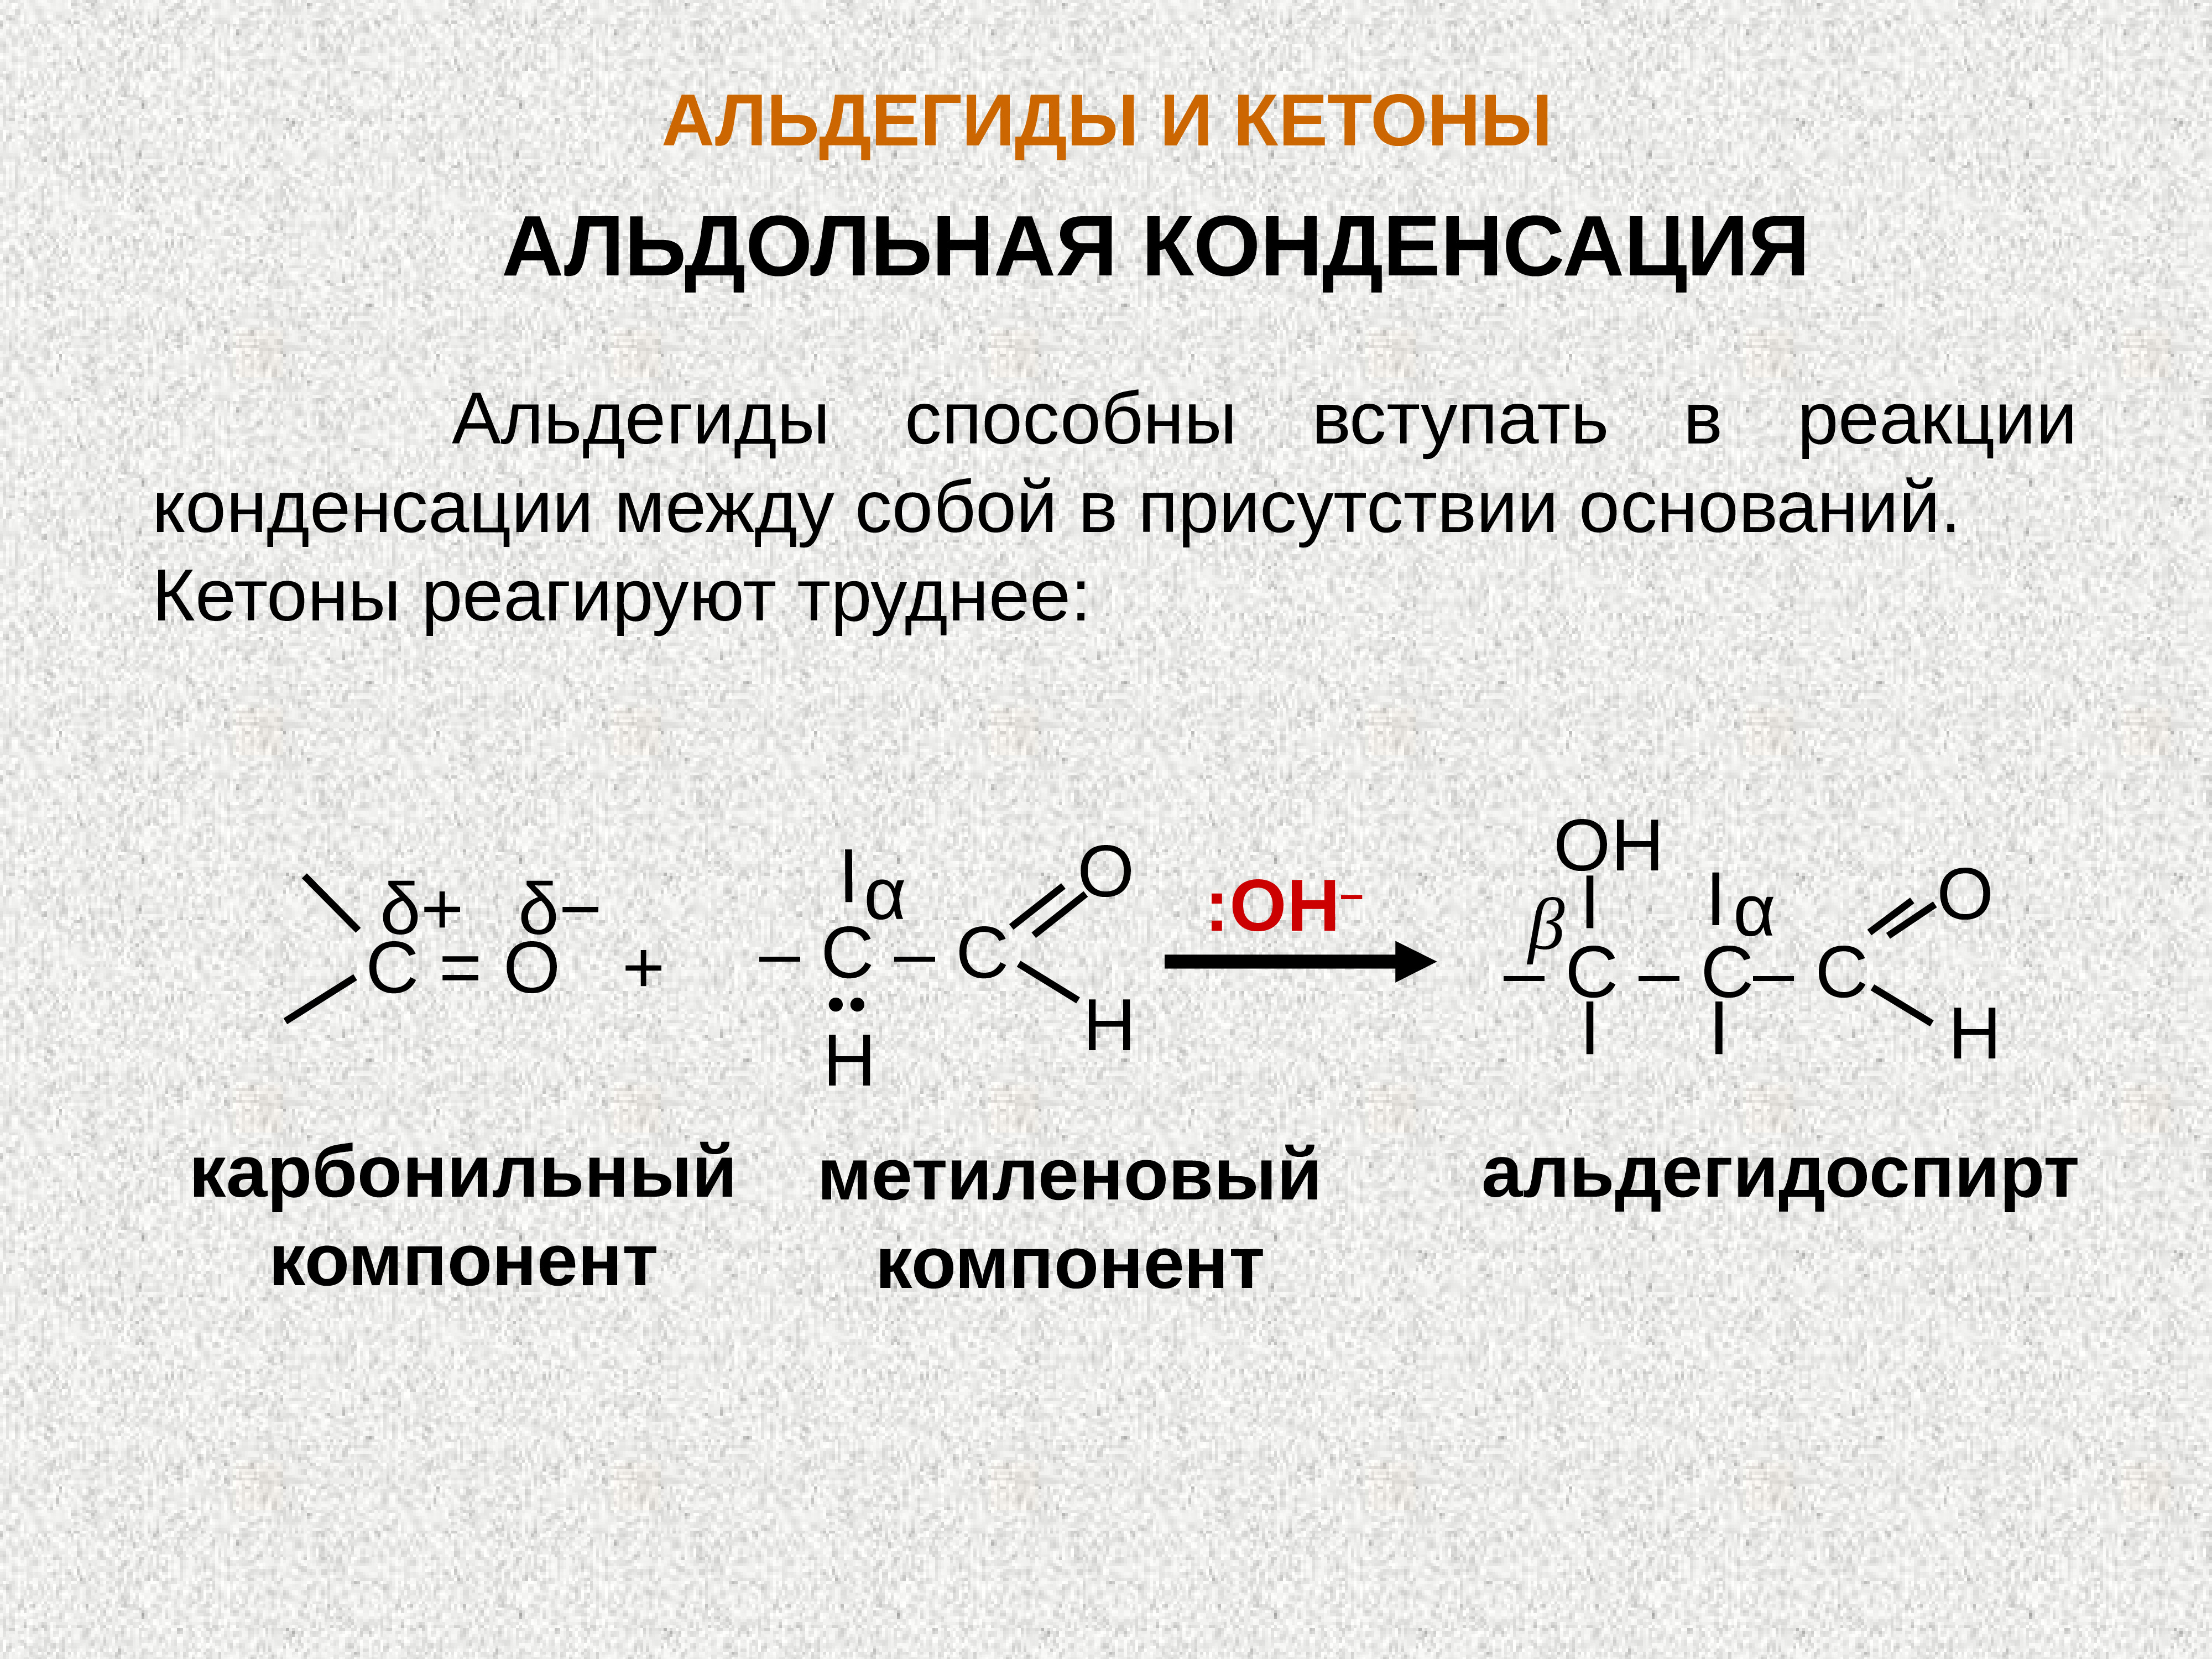 Гидролиз ацетальдегида. Реакция альдольной конденсации альдегидов. Альдольная конденсация альдегида и кетона. Кетон альдегид реакция конденсации. Конденсации формальдегида с диэтилкетоном.